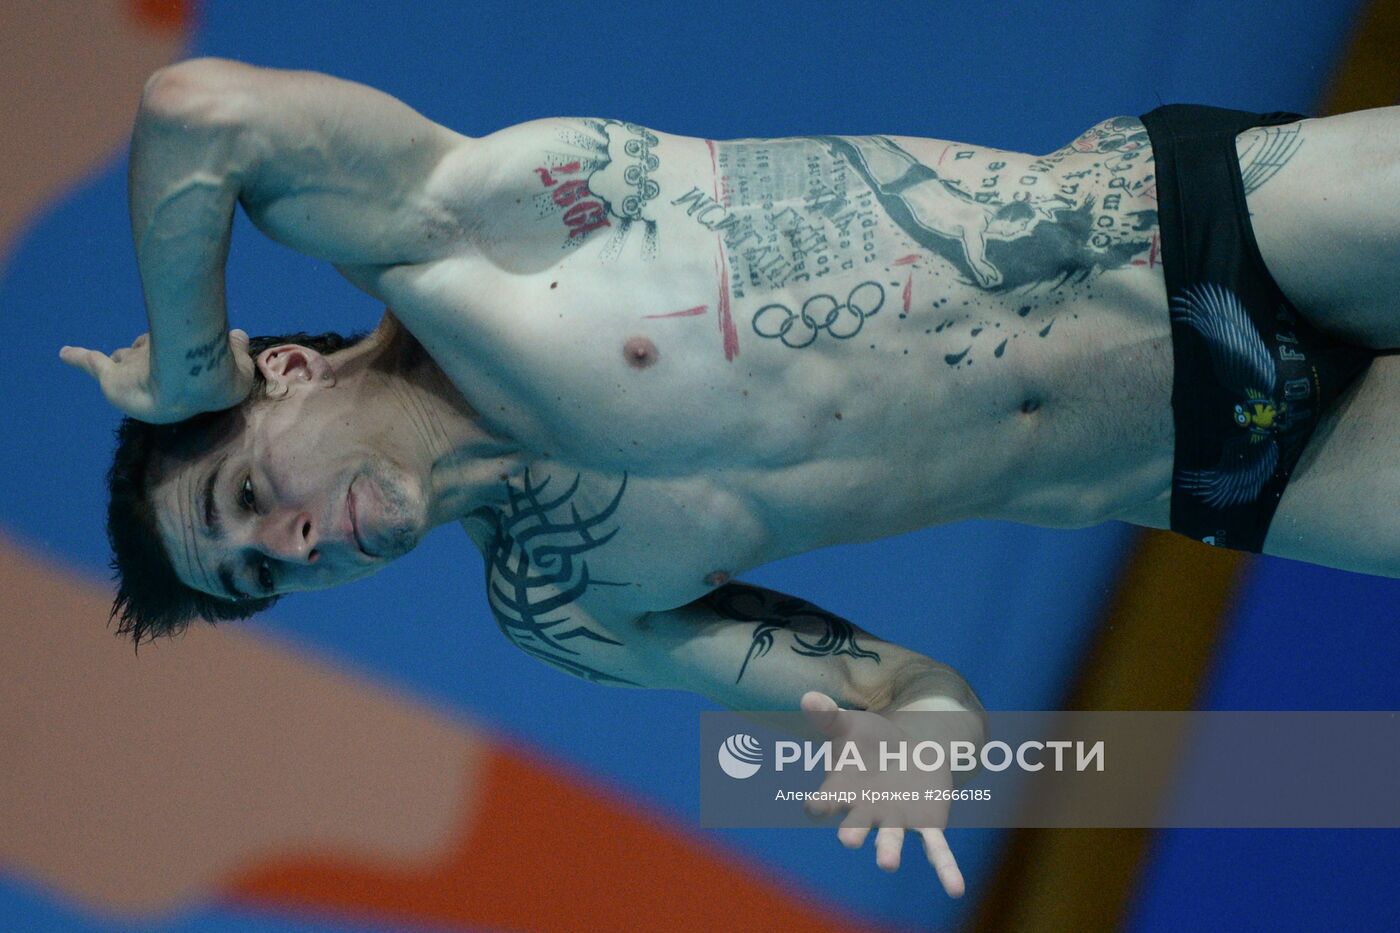 Чемпионат мира FINA 2015. Прыжки в воду. Мужчины. Трамплин 1м. Финал